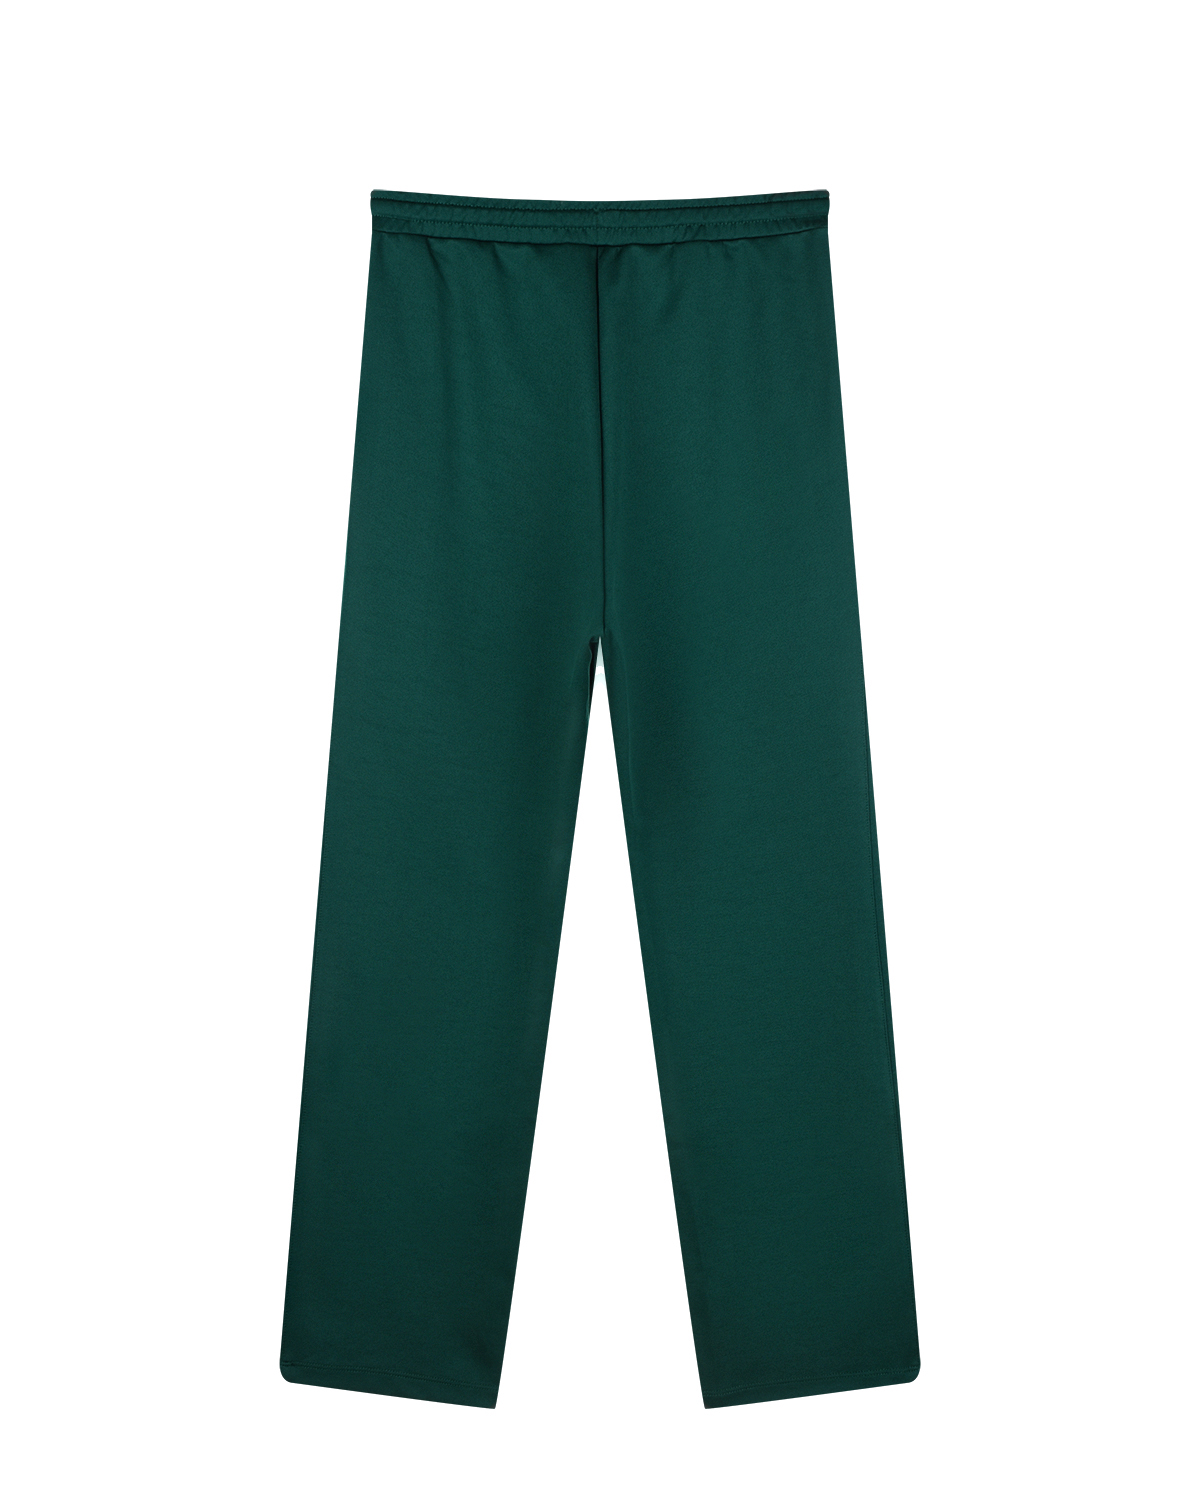 Зеленые спортивные брюки с белыми лампасами No. 21 детские - фото 2